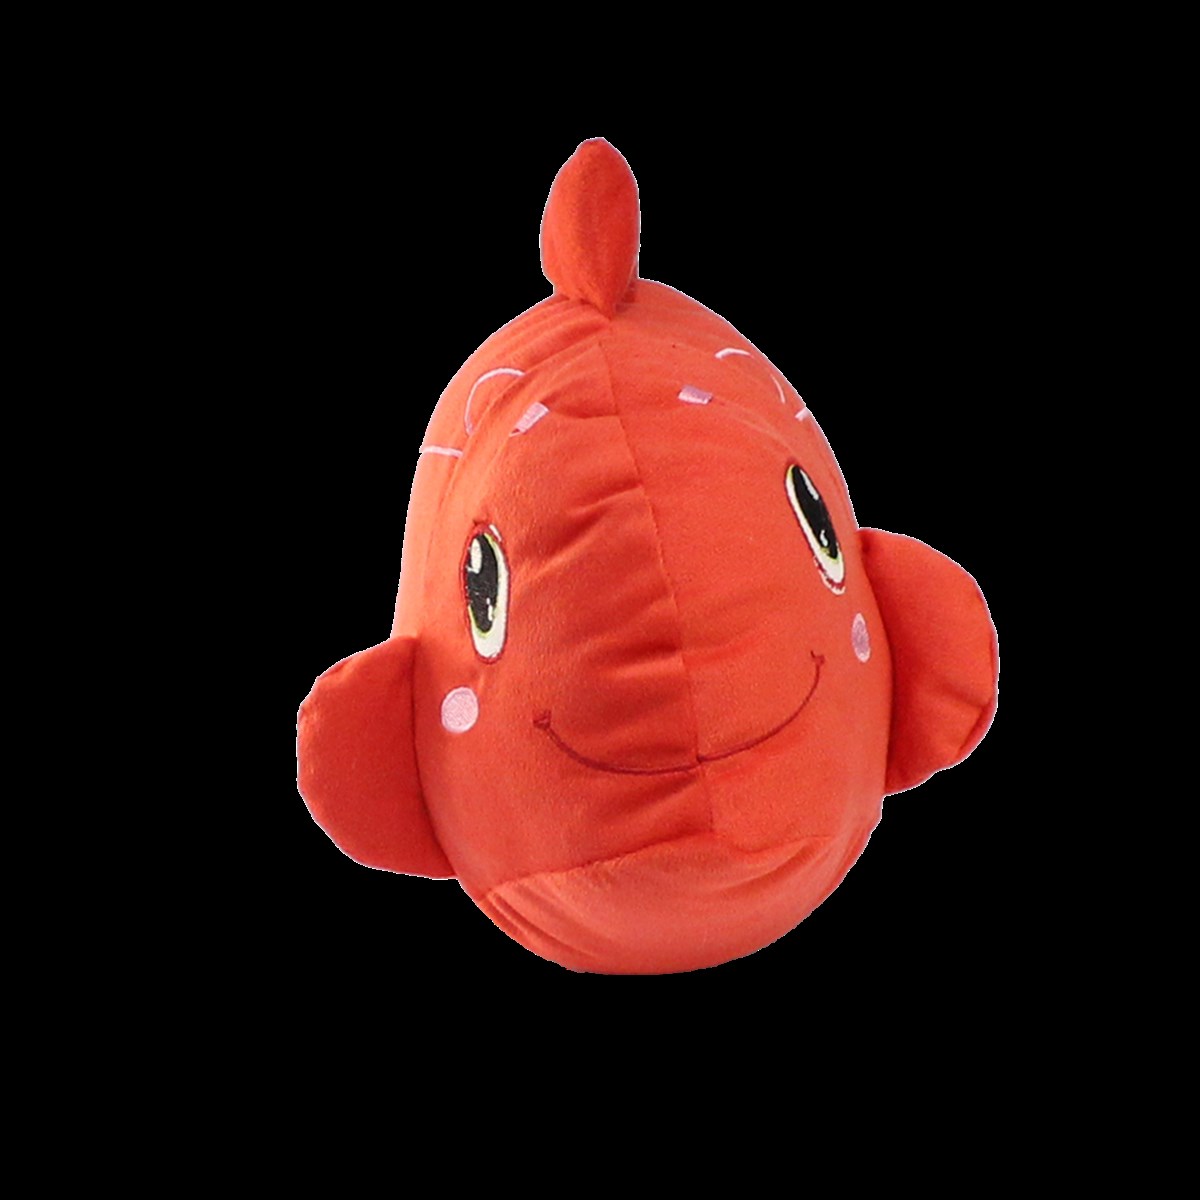 Sesli Kırmızı Balık Peluş Oyuncak 40 cm, Alışverişin Adresi'nde | Shopiglo